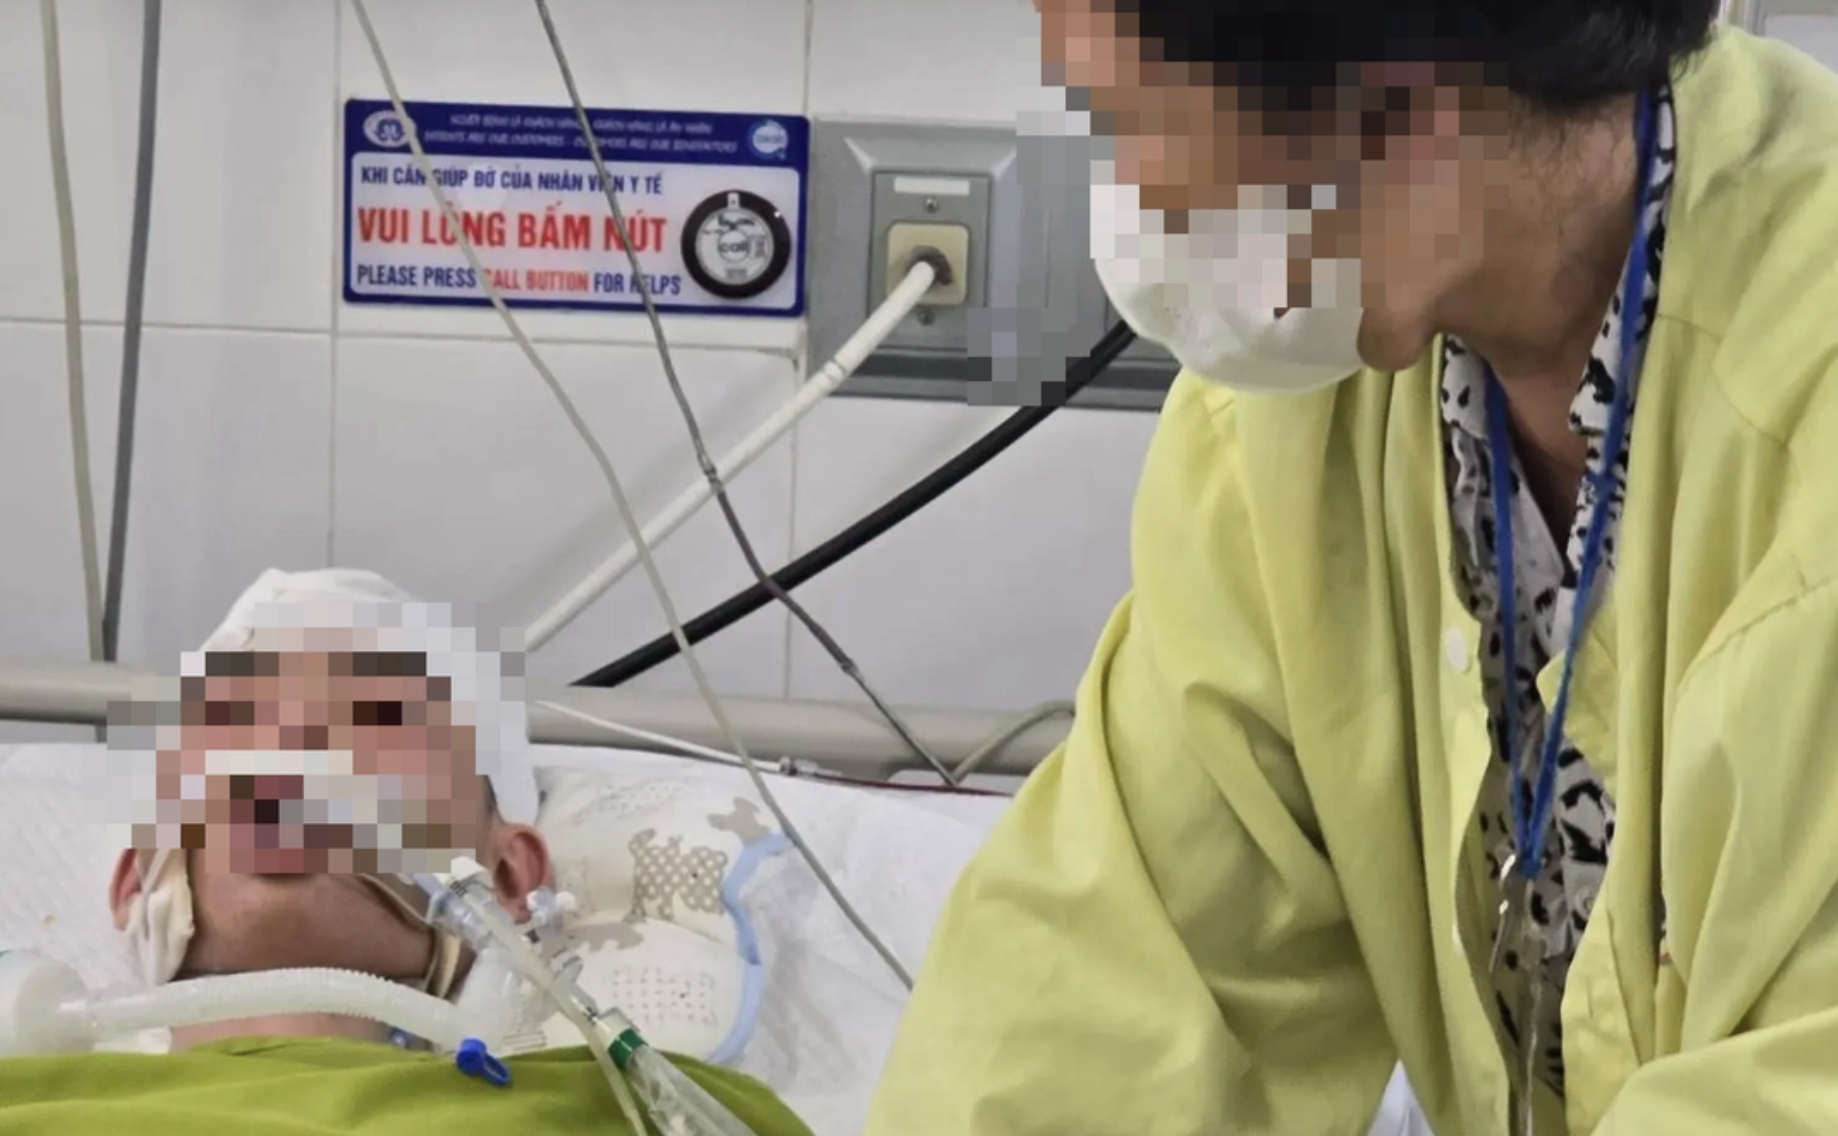 Cục Trẻ em báo cáo nguyên nhân vụ nam sinh bị đánh đến chết não ở Hà Nội: Hé lộ bất ngờ từ cháu bé 12 tuổi - Ảnh 2